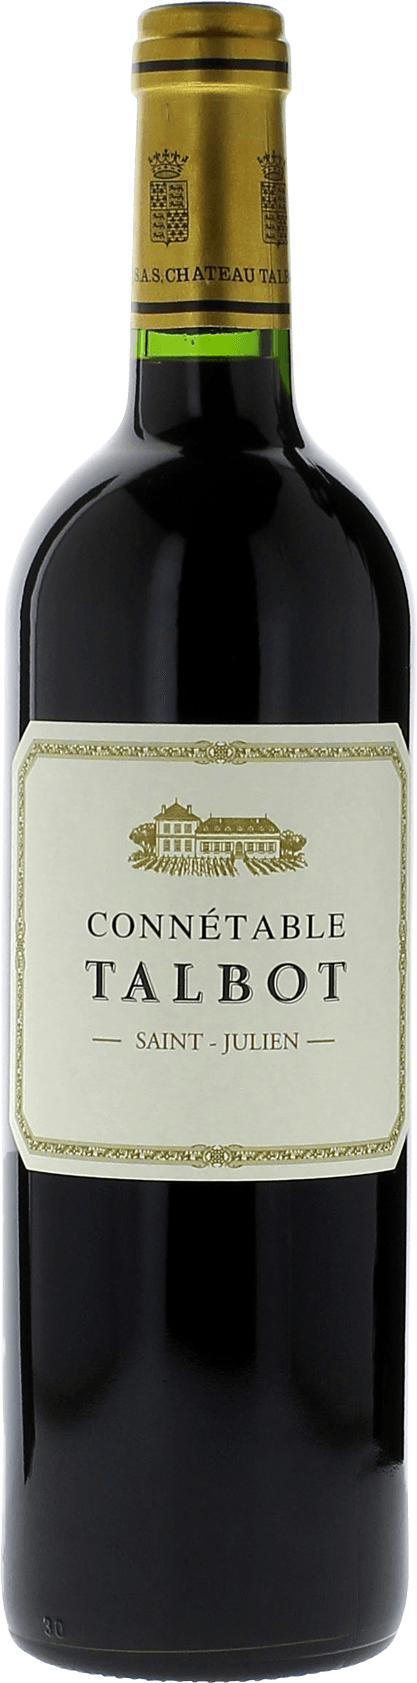 Connetable talbot 2017 2me vin de TALBOT Saint-Julien, Bordeaux rouge